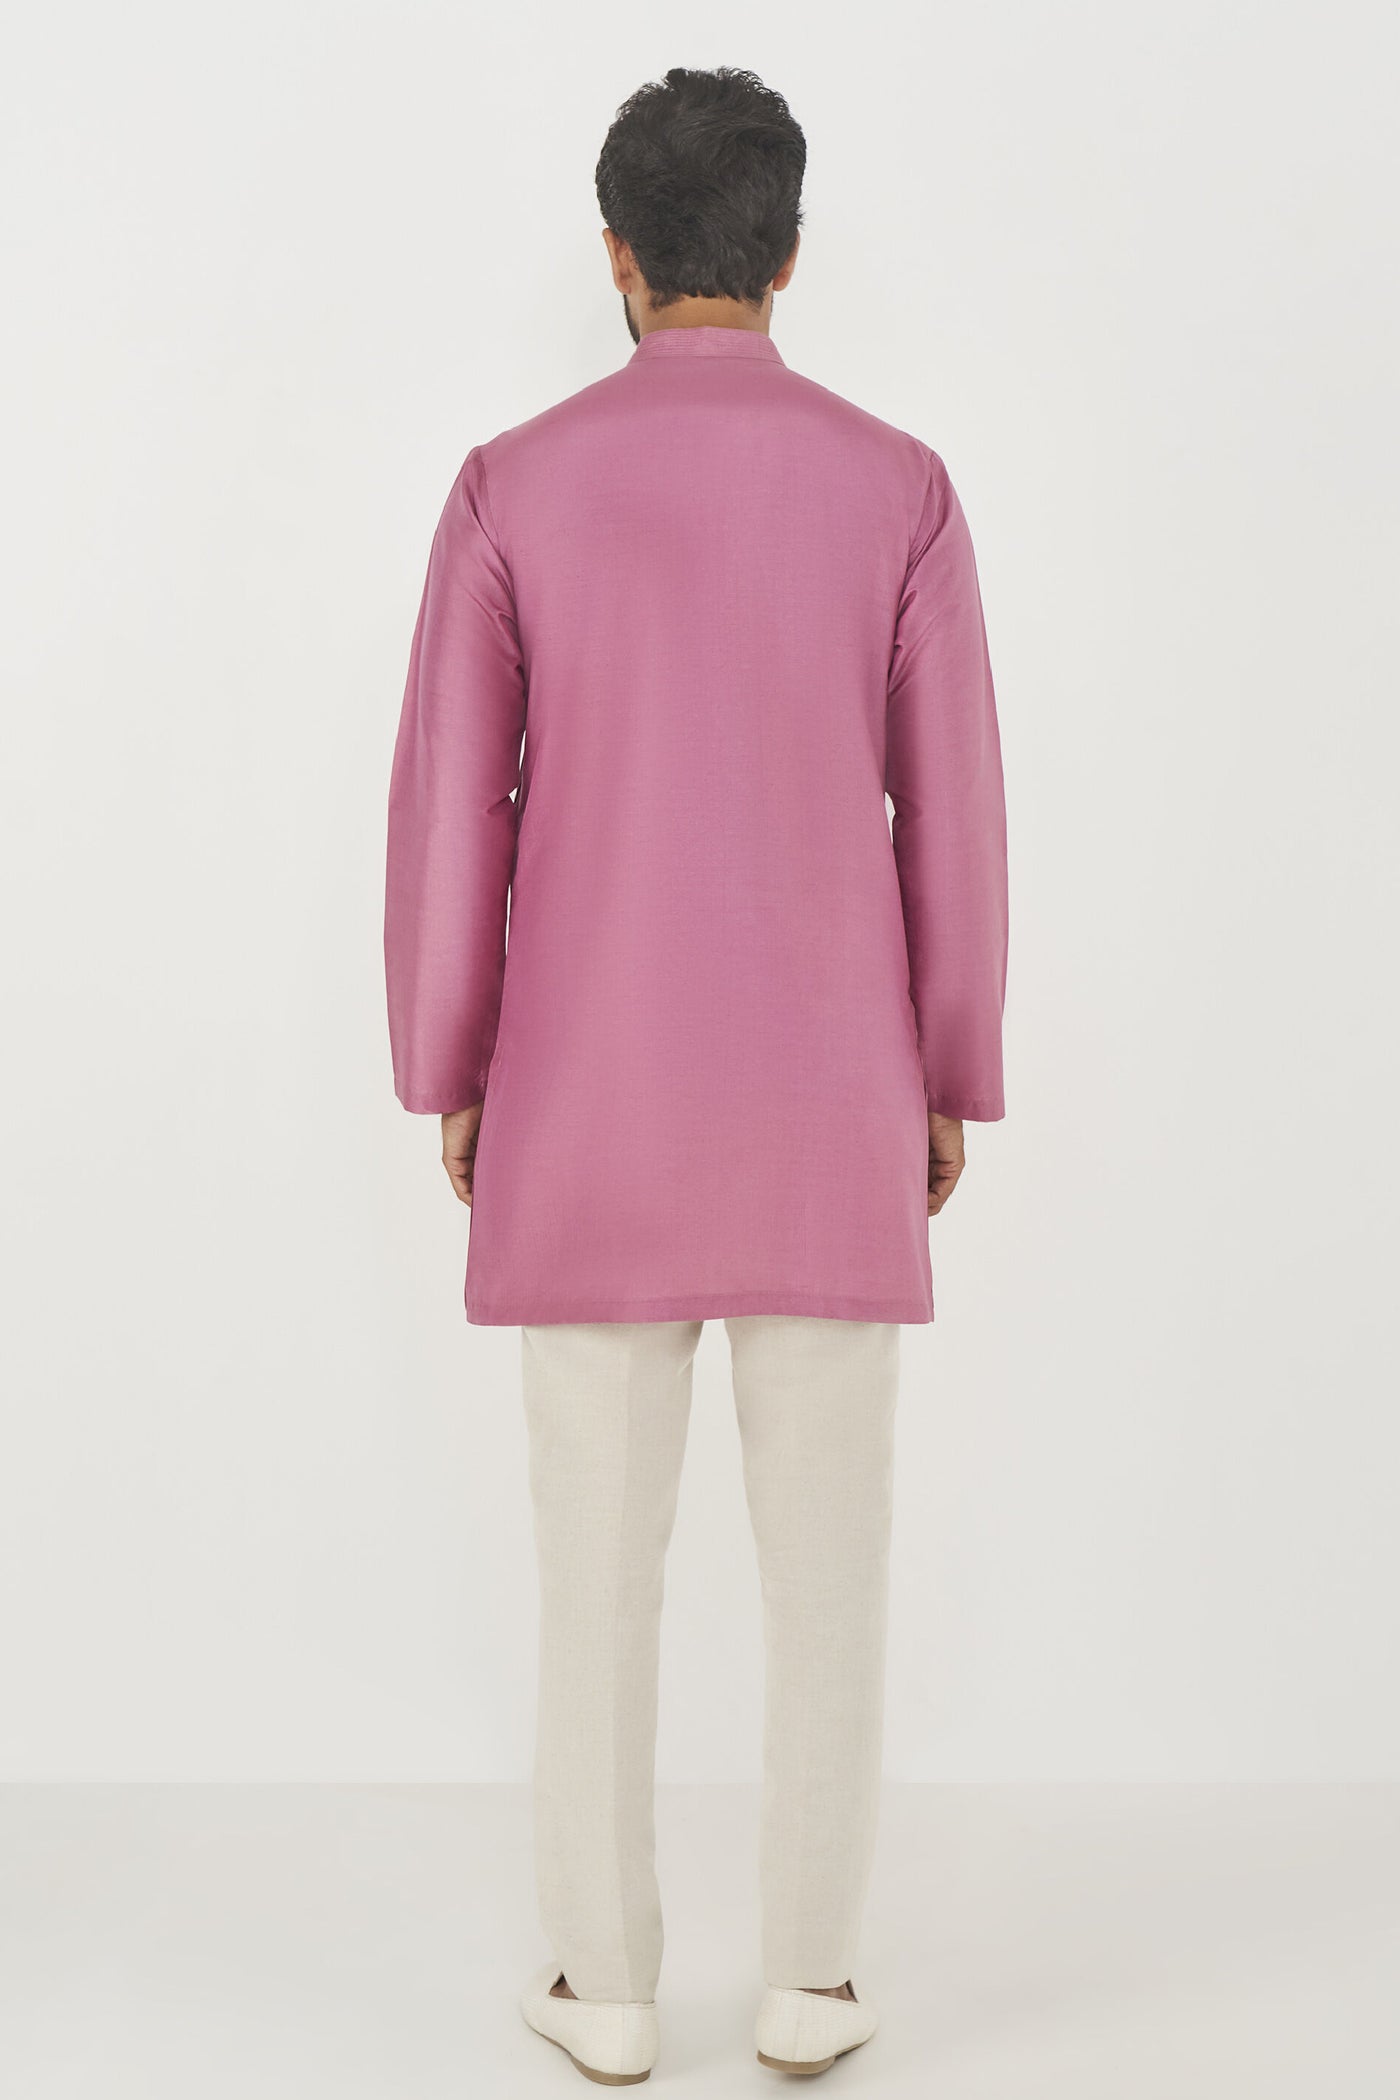 Anita Dongre Menswear Daksh Kurta Lilac Indian designer wear online shopping melange singapore